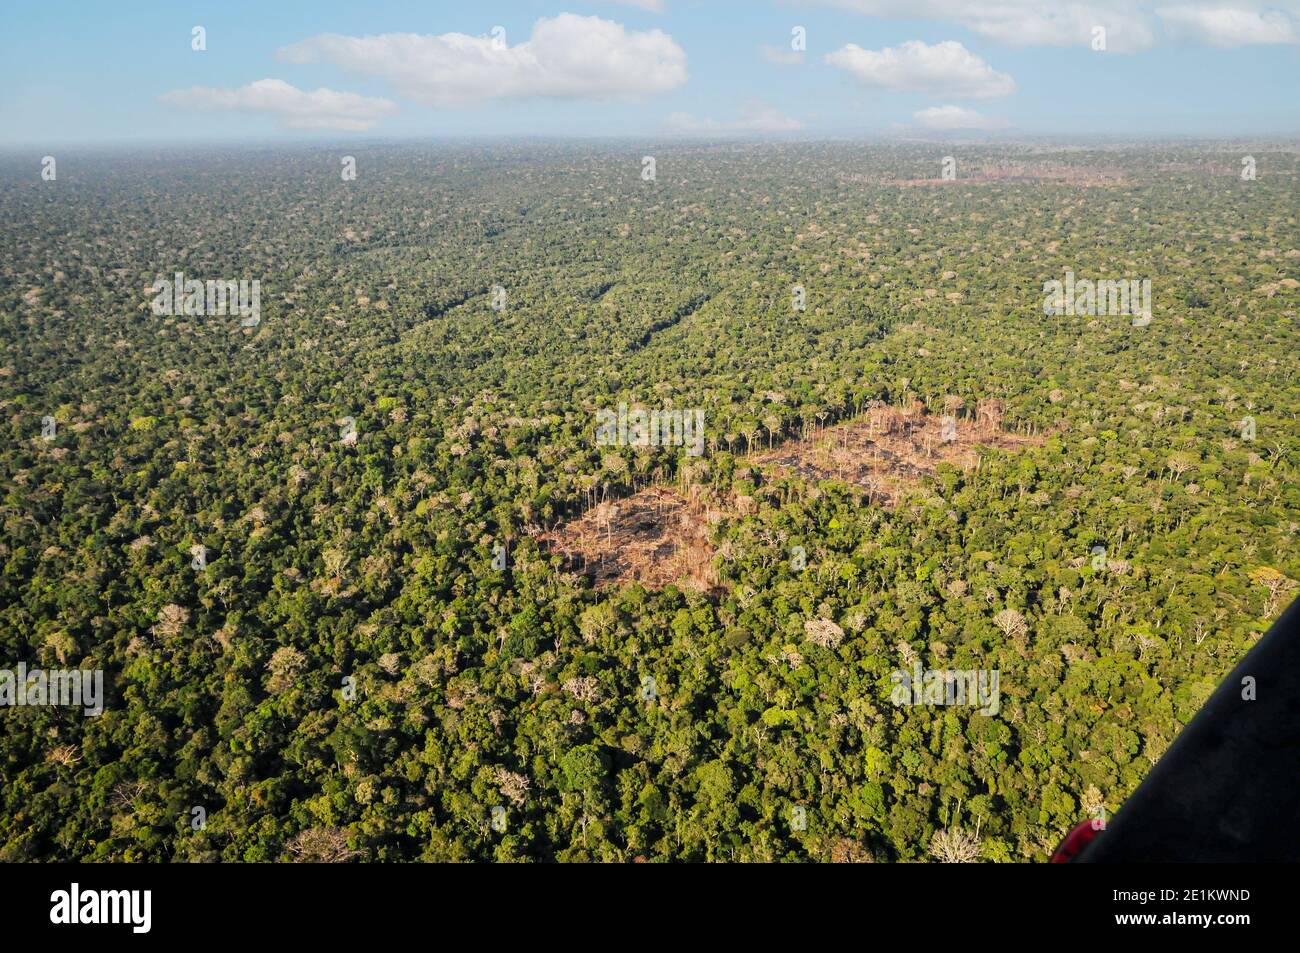 Vista aérea de la selva brasileña Foto de stock